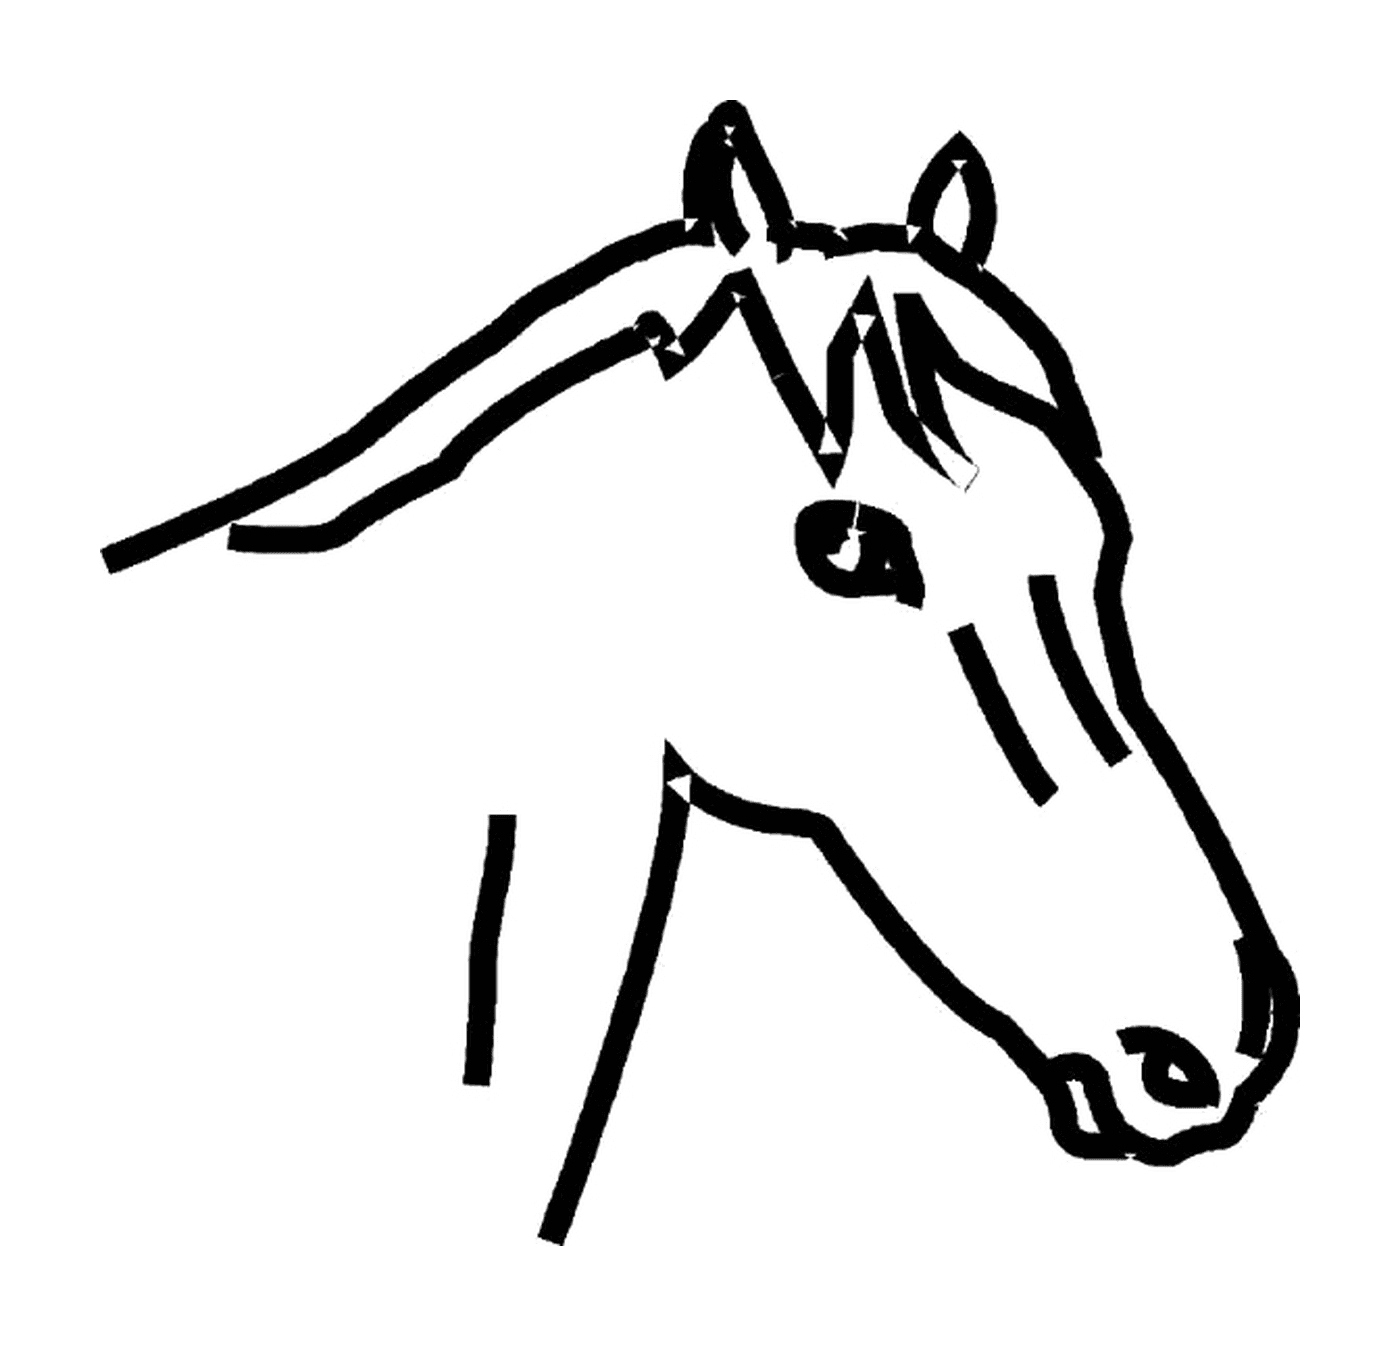  La imponente cabeza de un caballo 